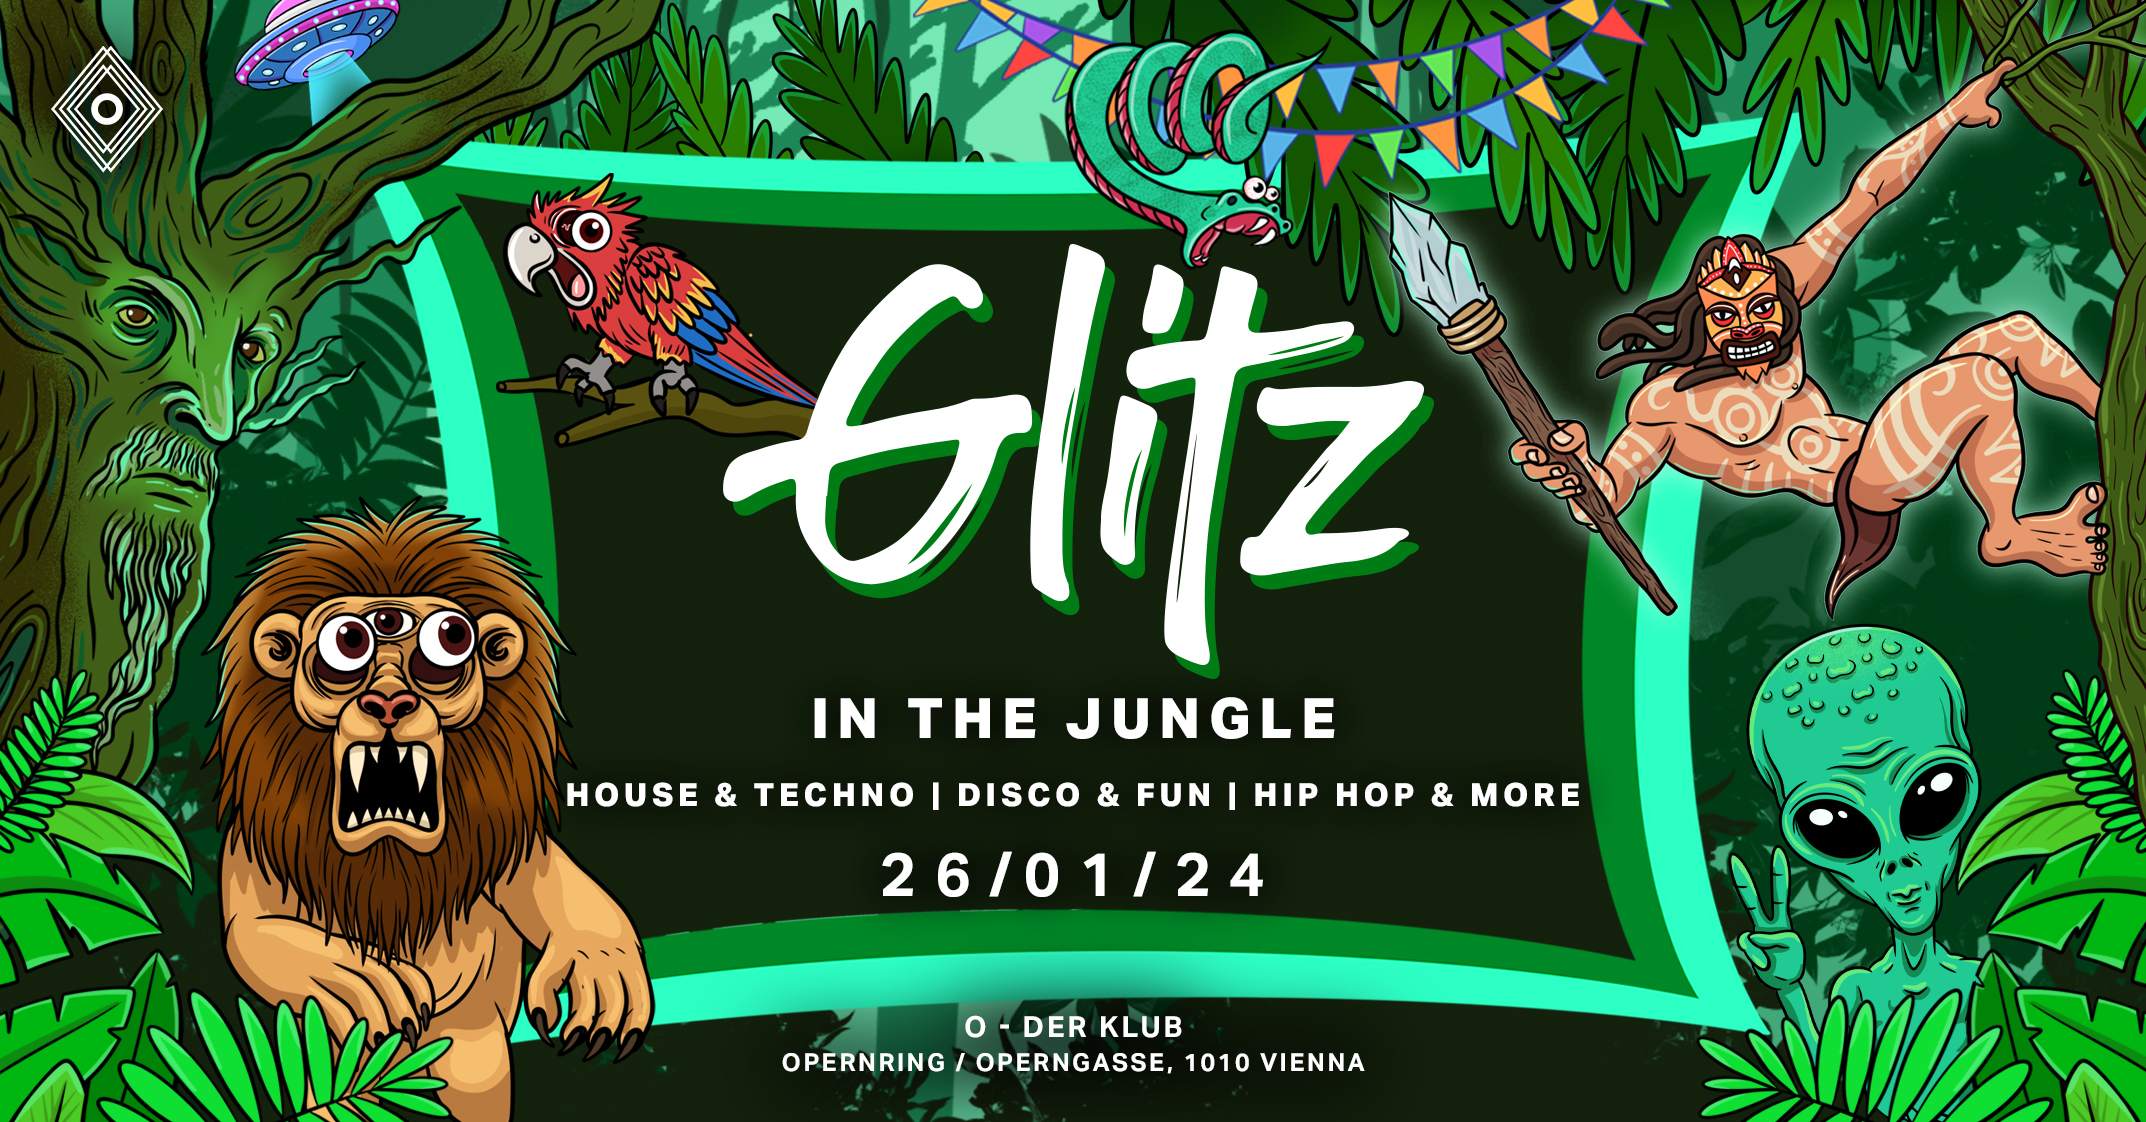 GLITZ - In the Jungle - Página frontal